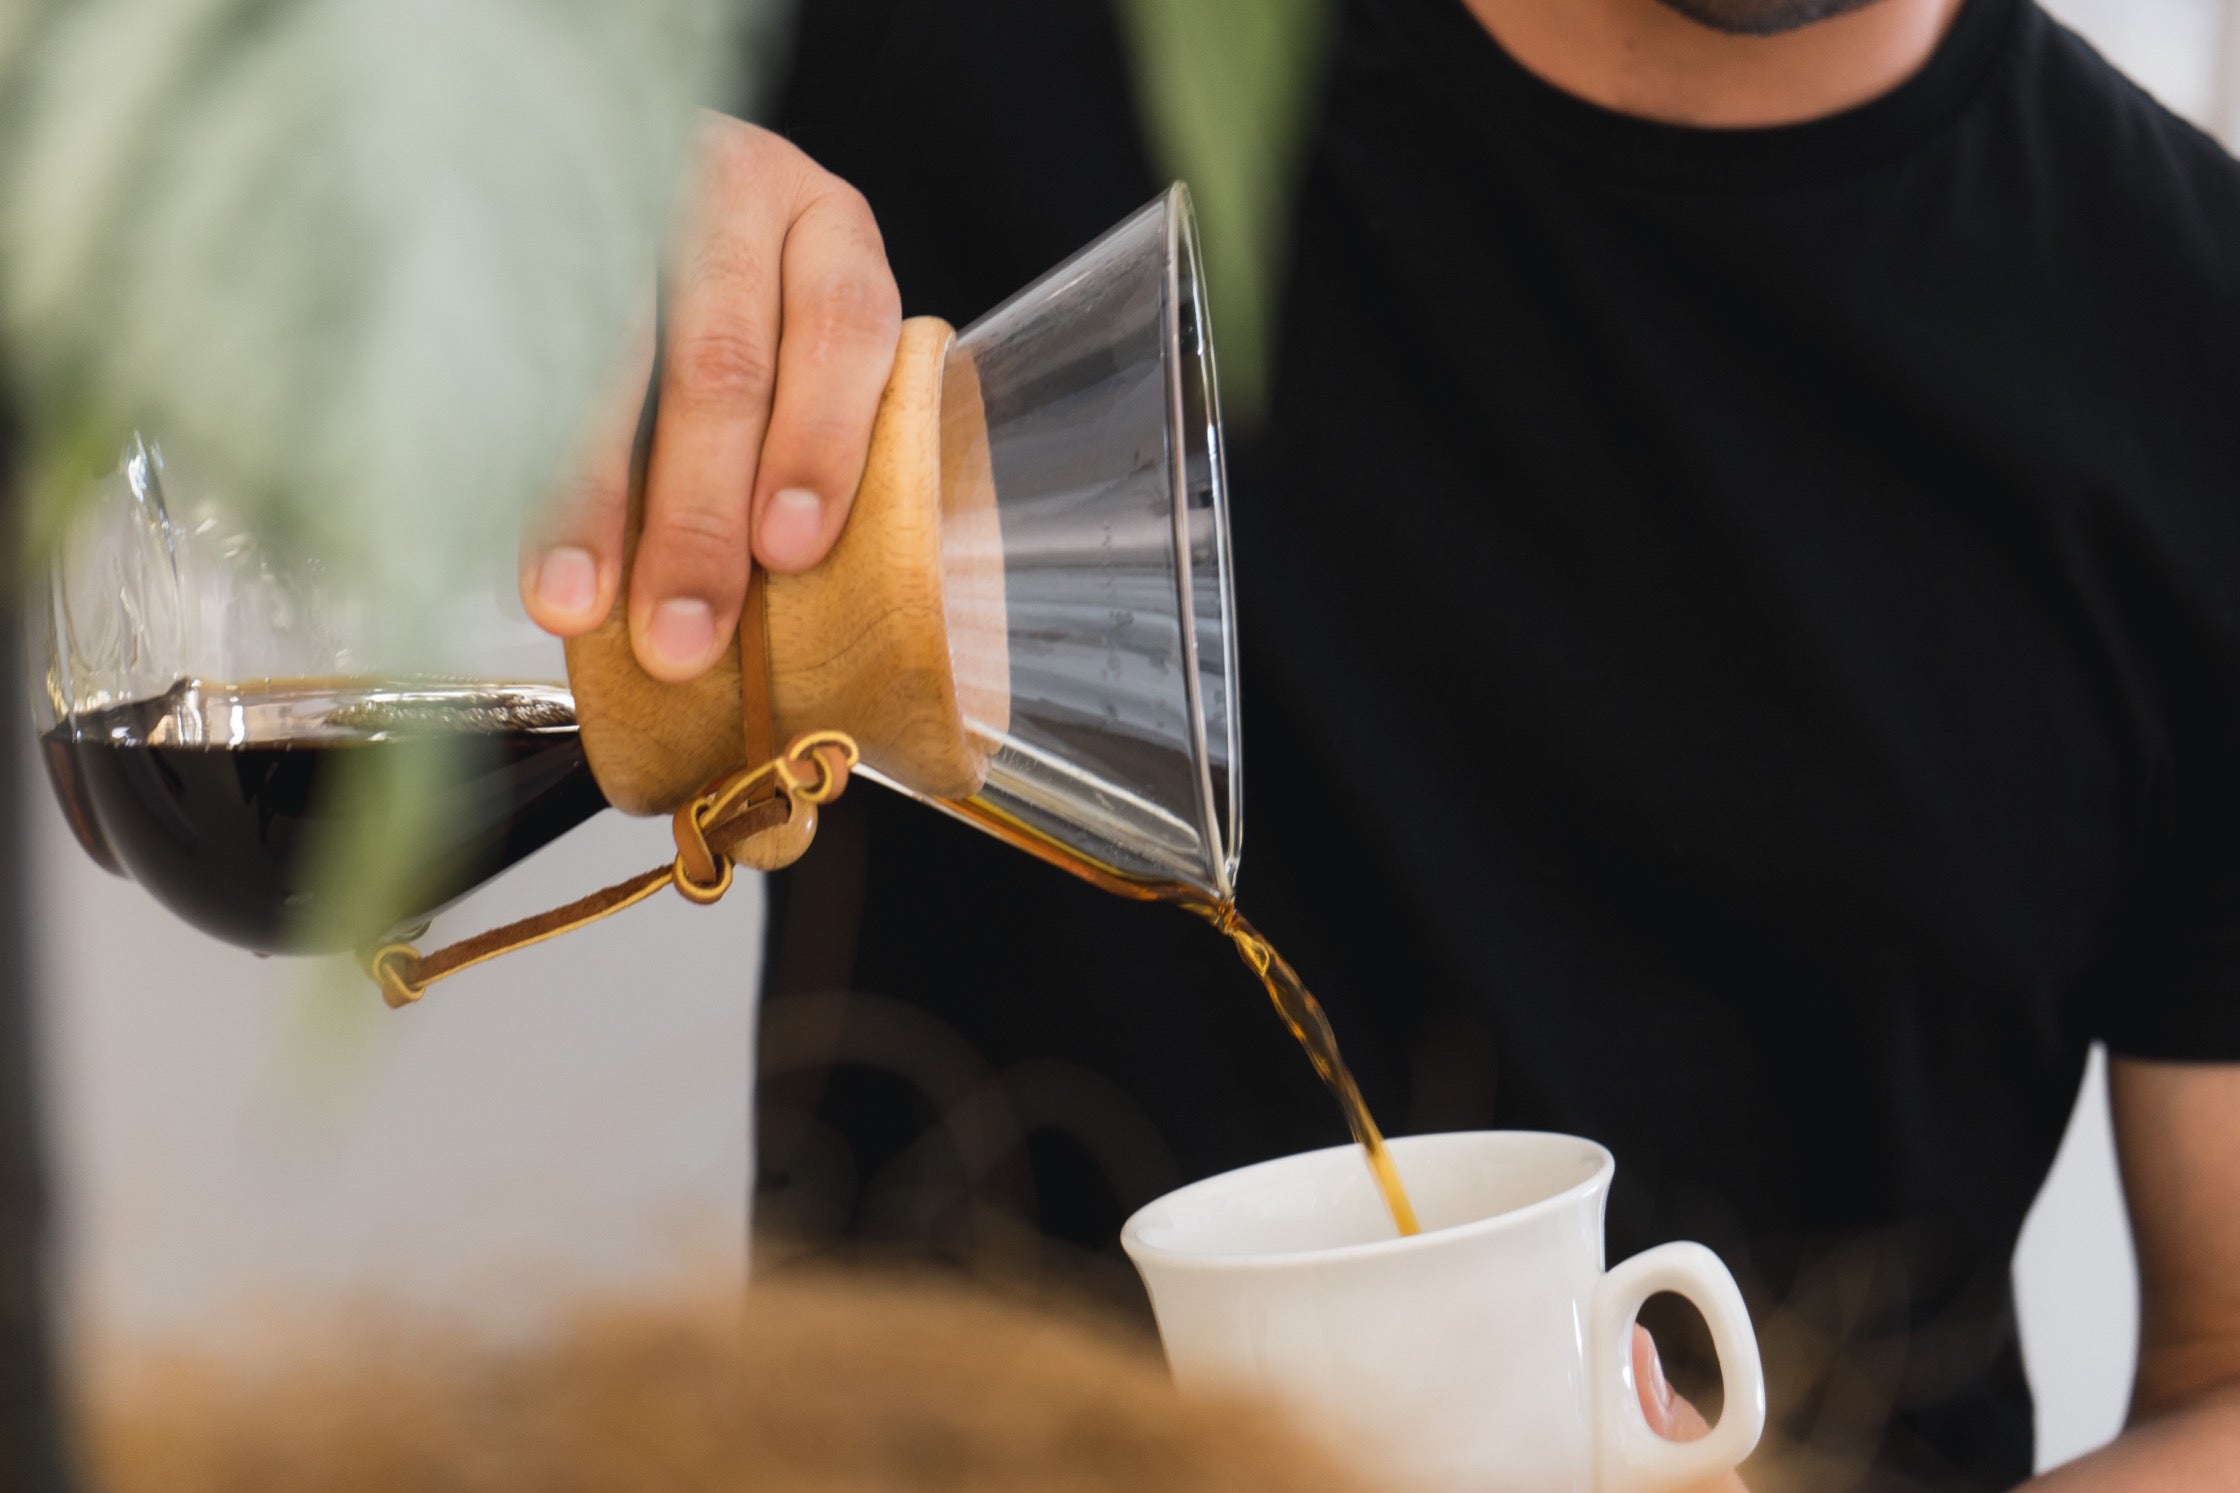 A close-up shot of Charlie pouring coffee into a mug